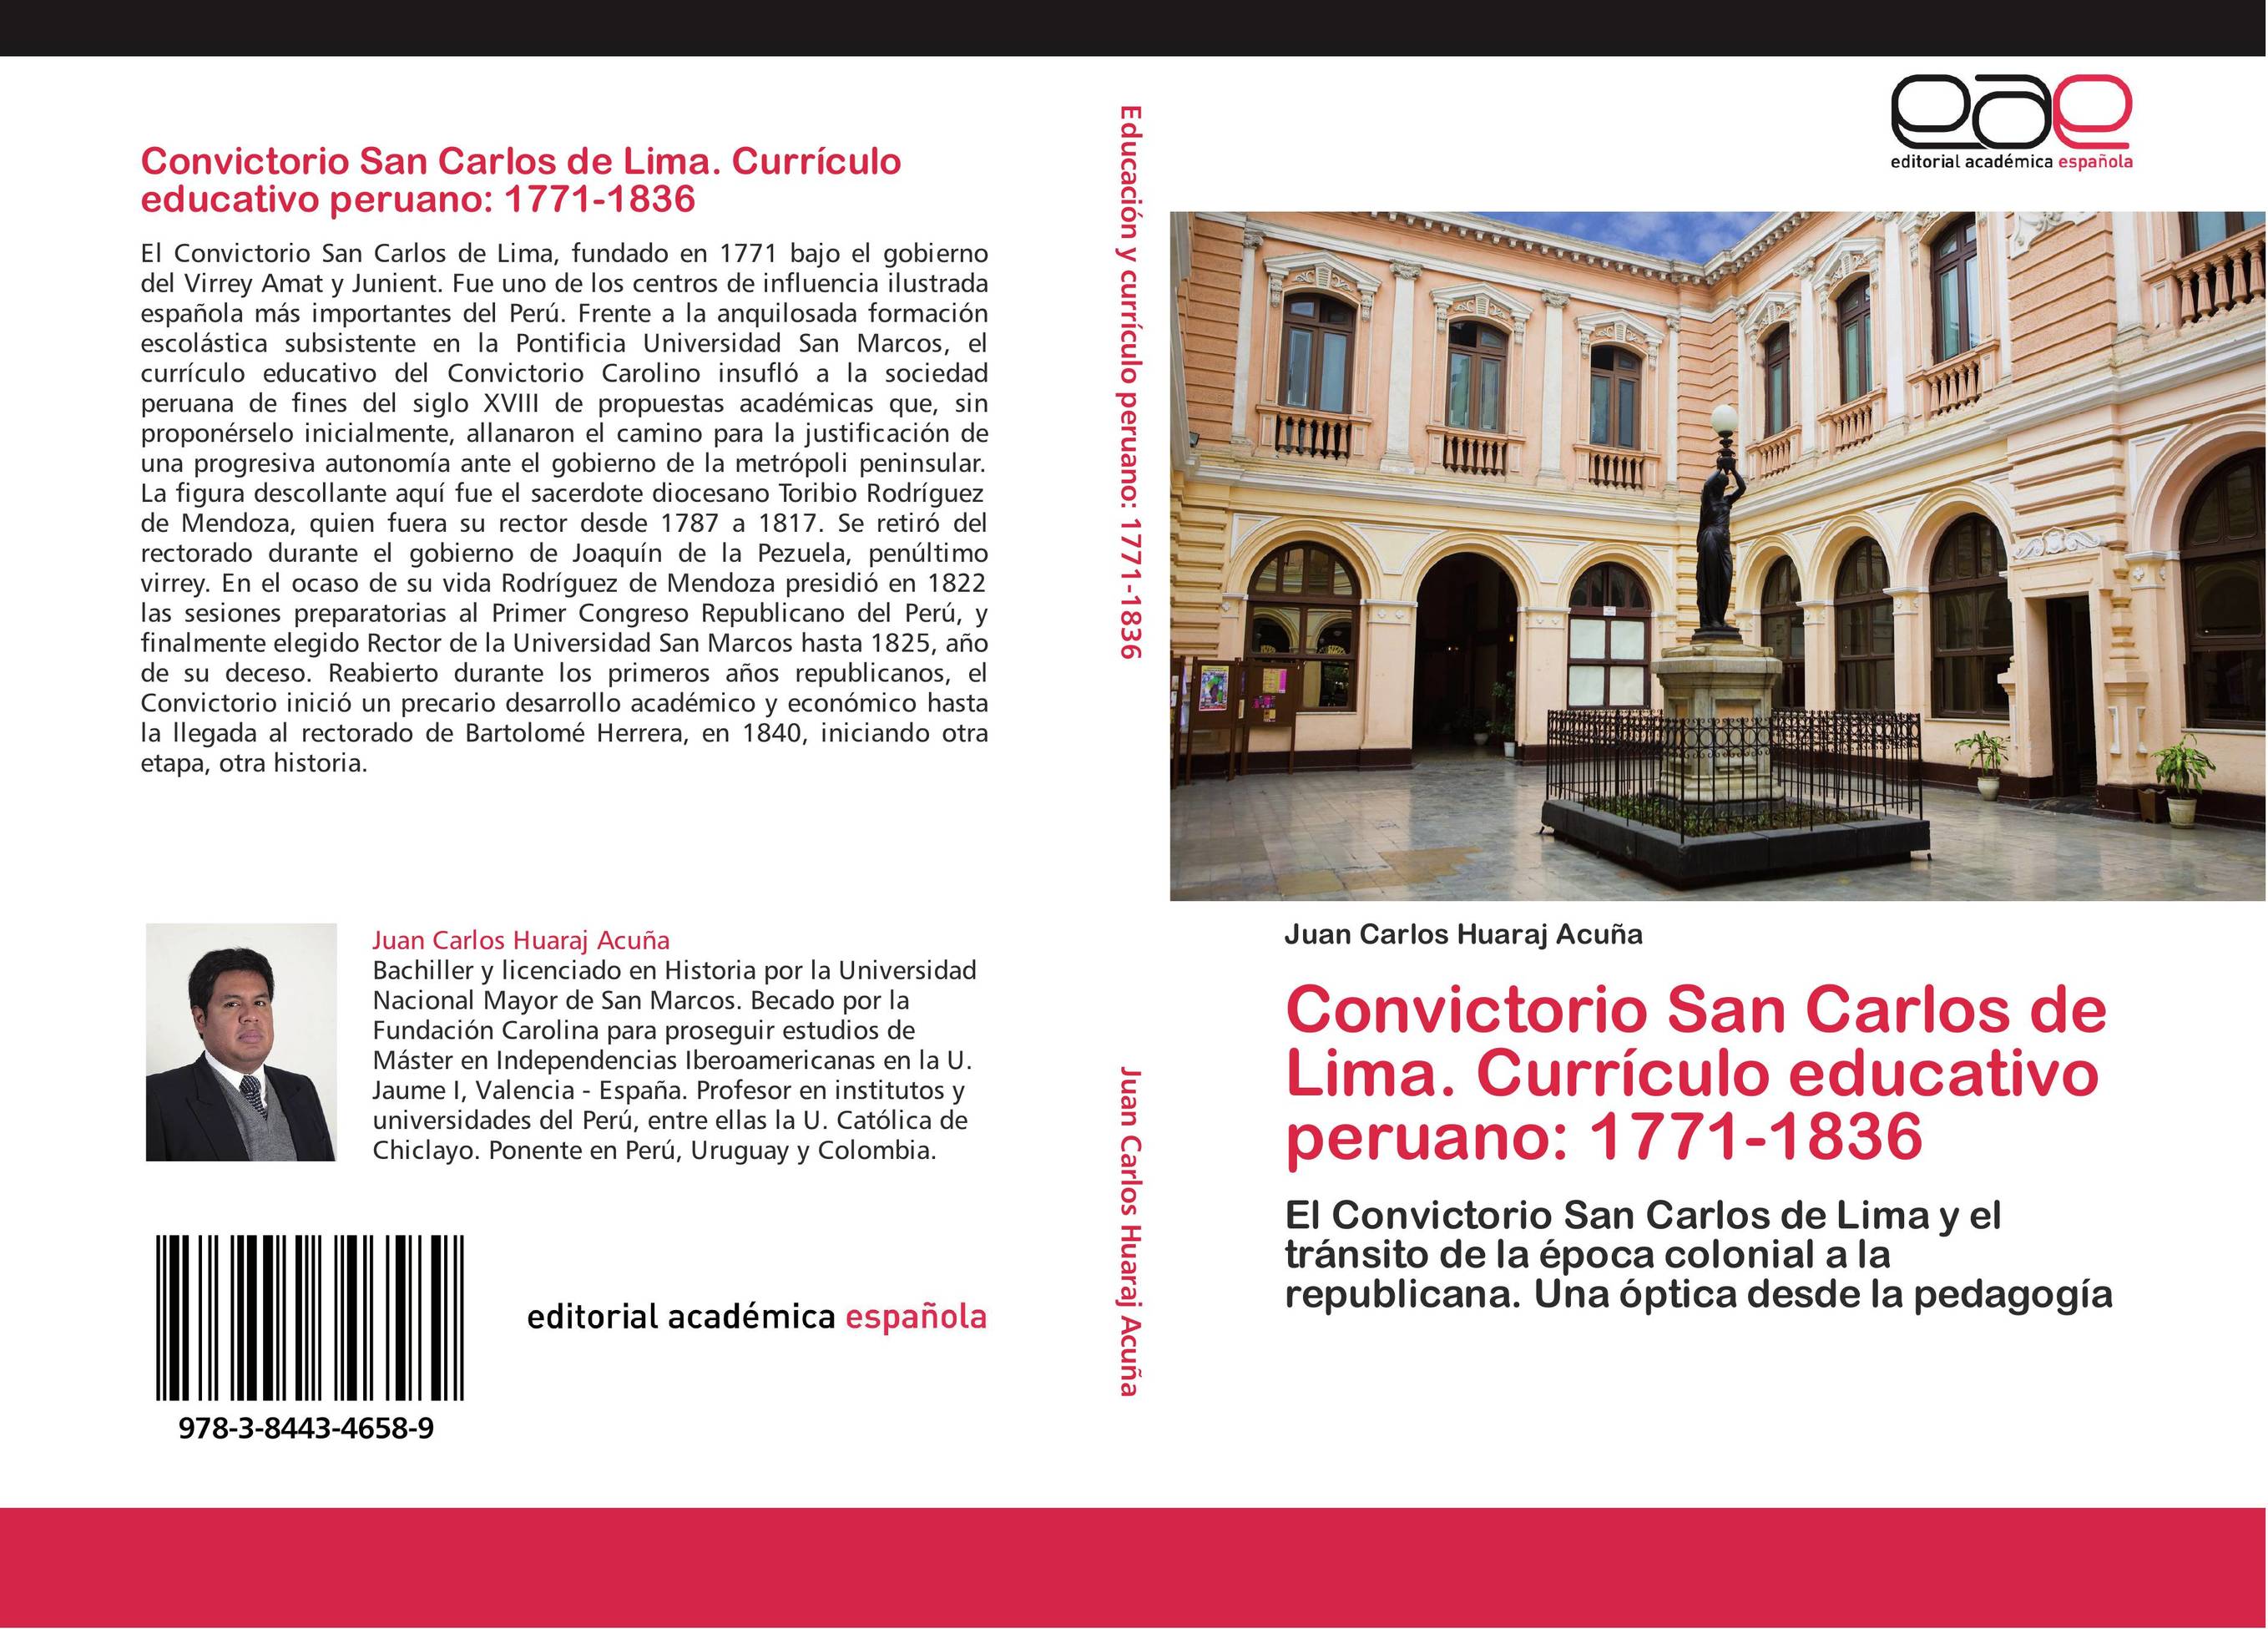 Convictorio San Carlos de Lima. Currículo educativo peruano: 1771-1836